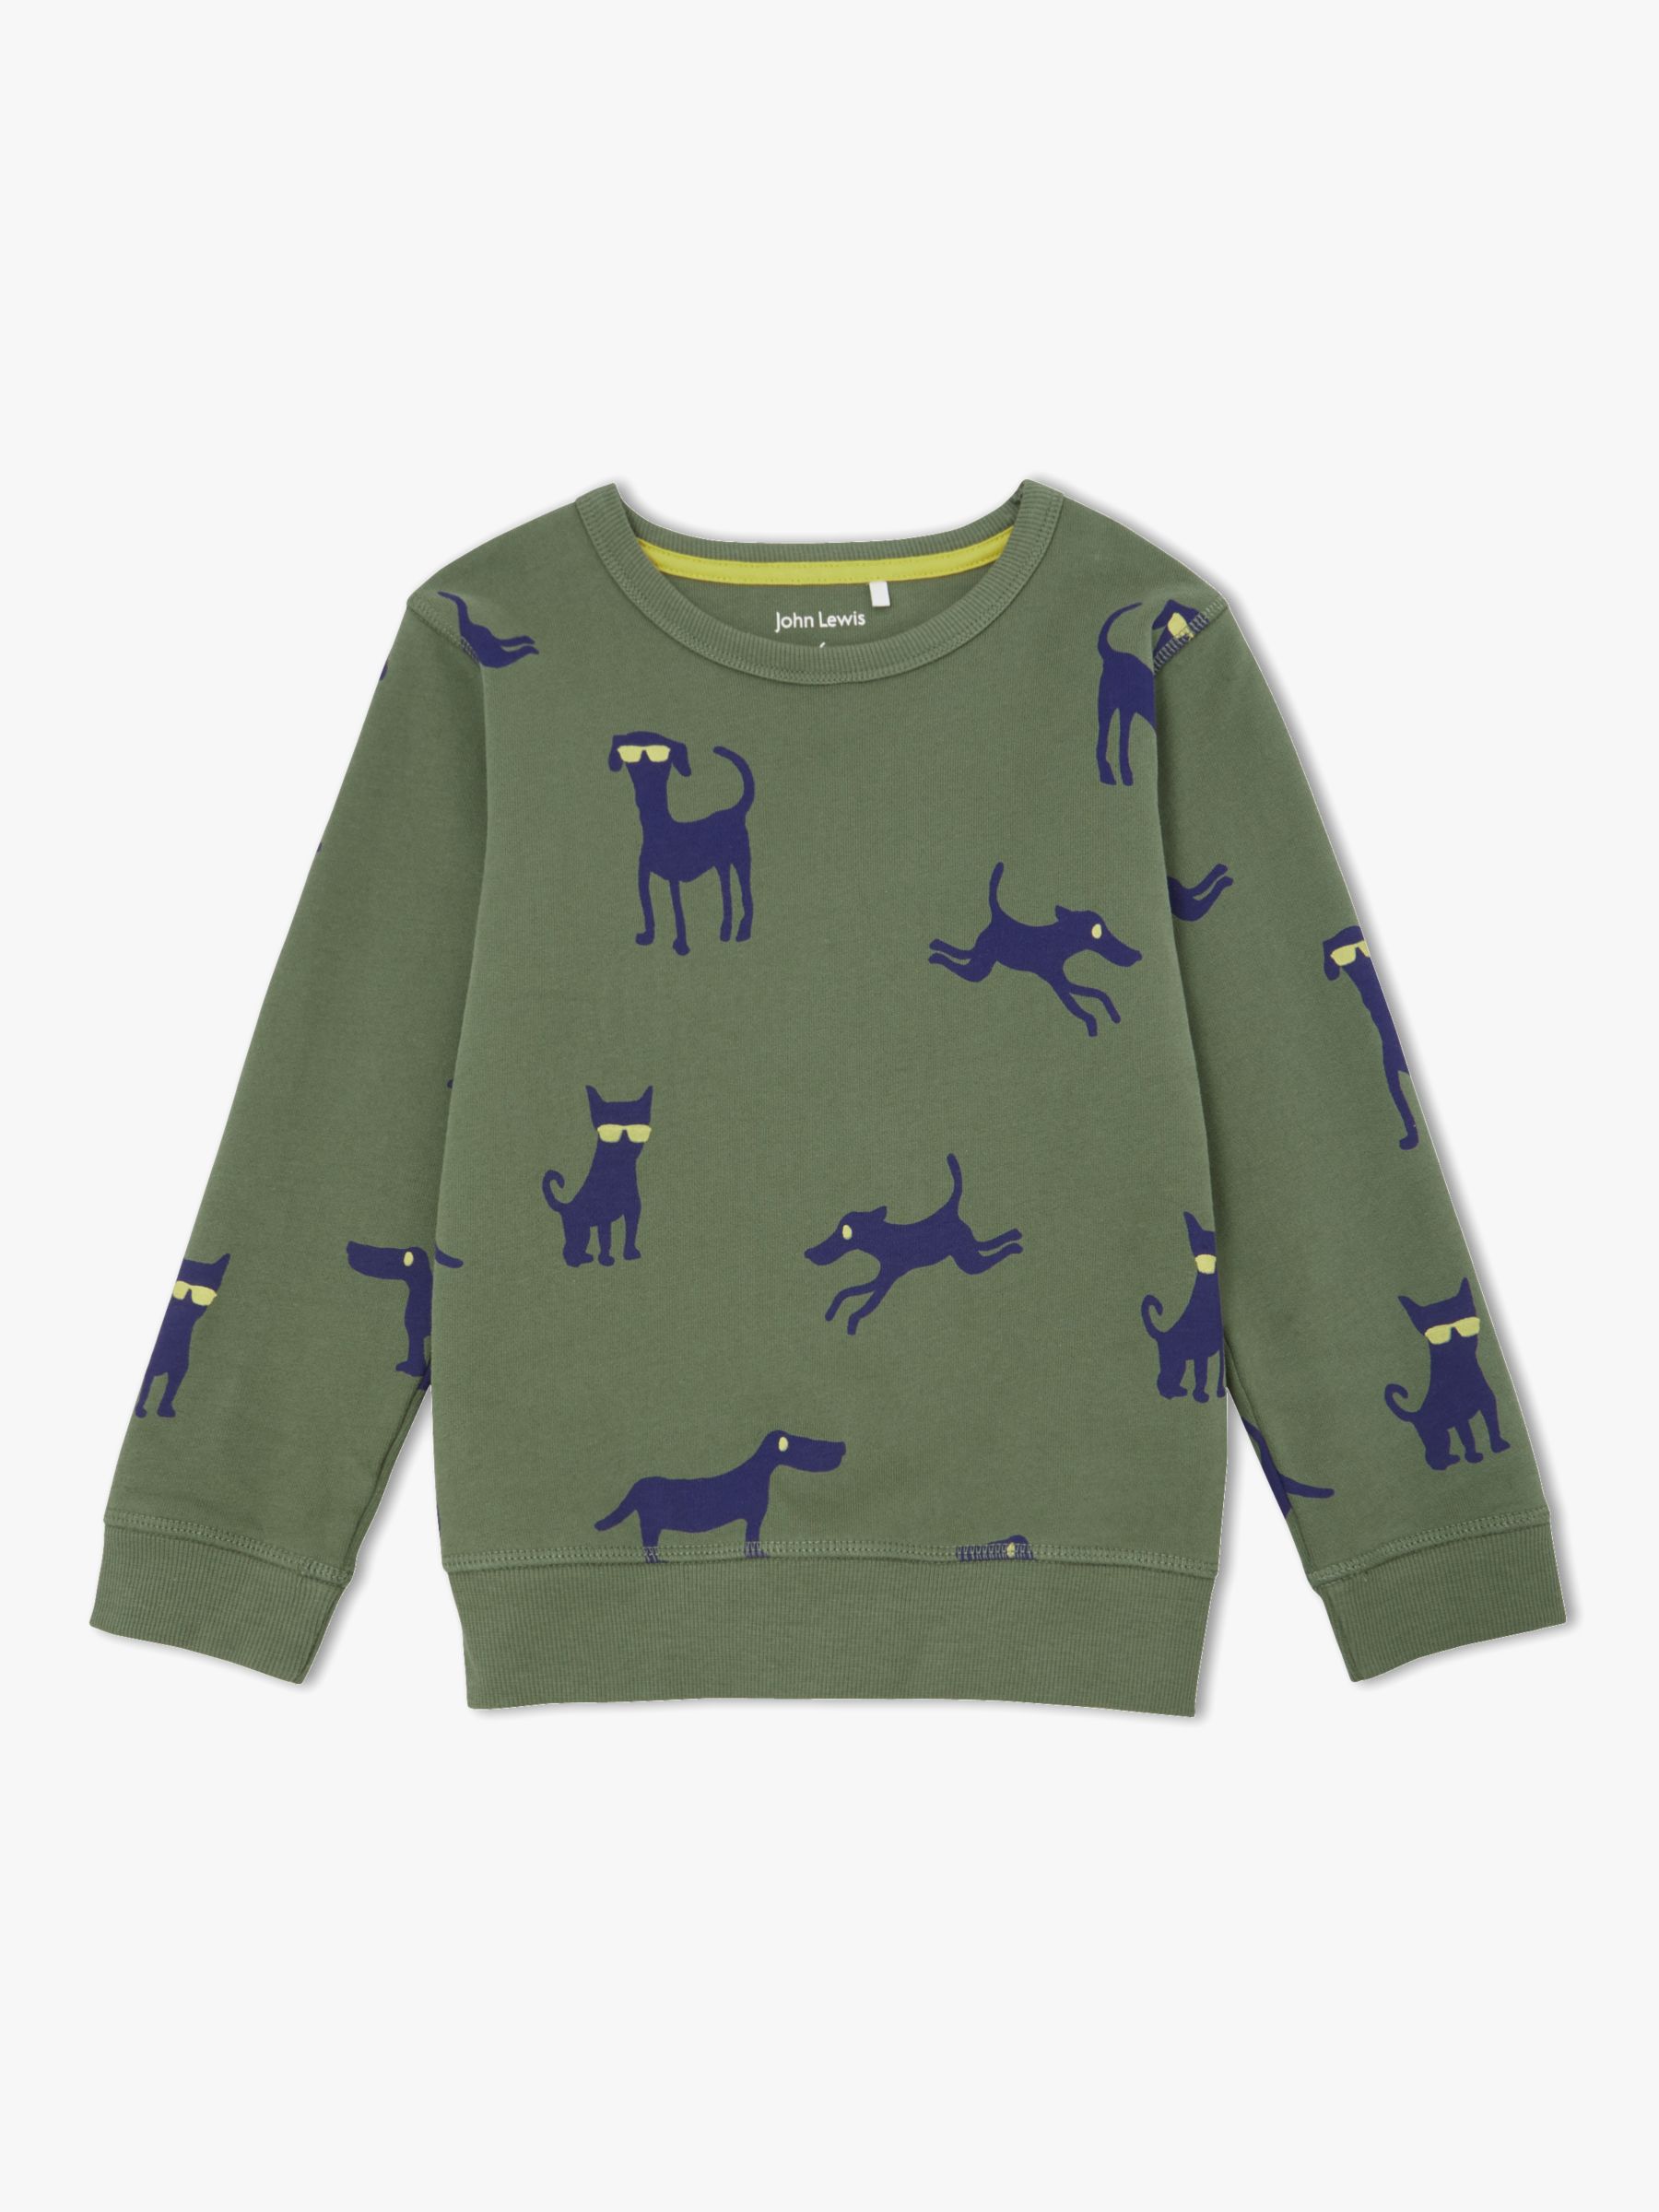 John Lewis & Partners Boys' Dog Sweatshirt, Olive